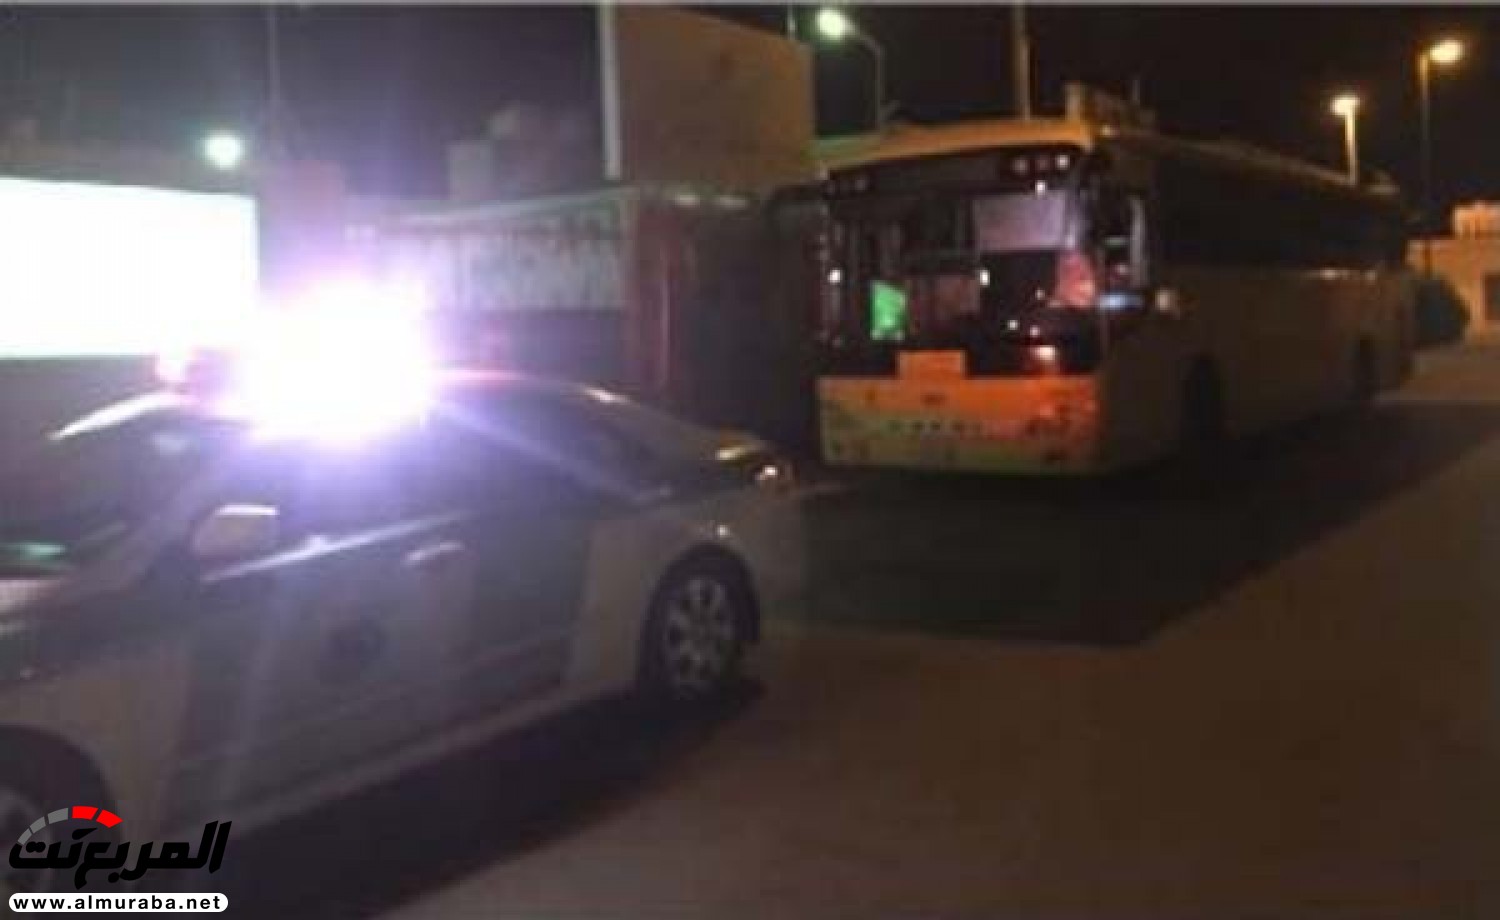 "المرور" يعلن القبض على قائد حافلة مدرسية عكس اتجاه السير بأحد أحياء محافظة حوطة 2